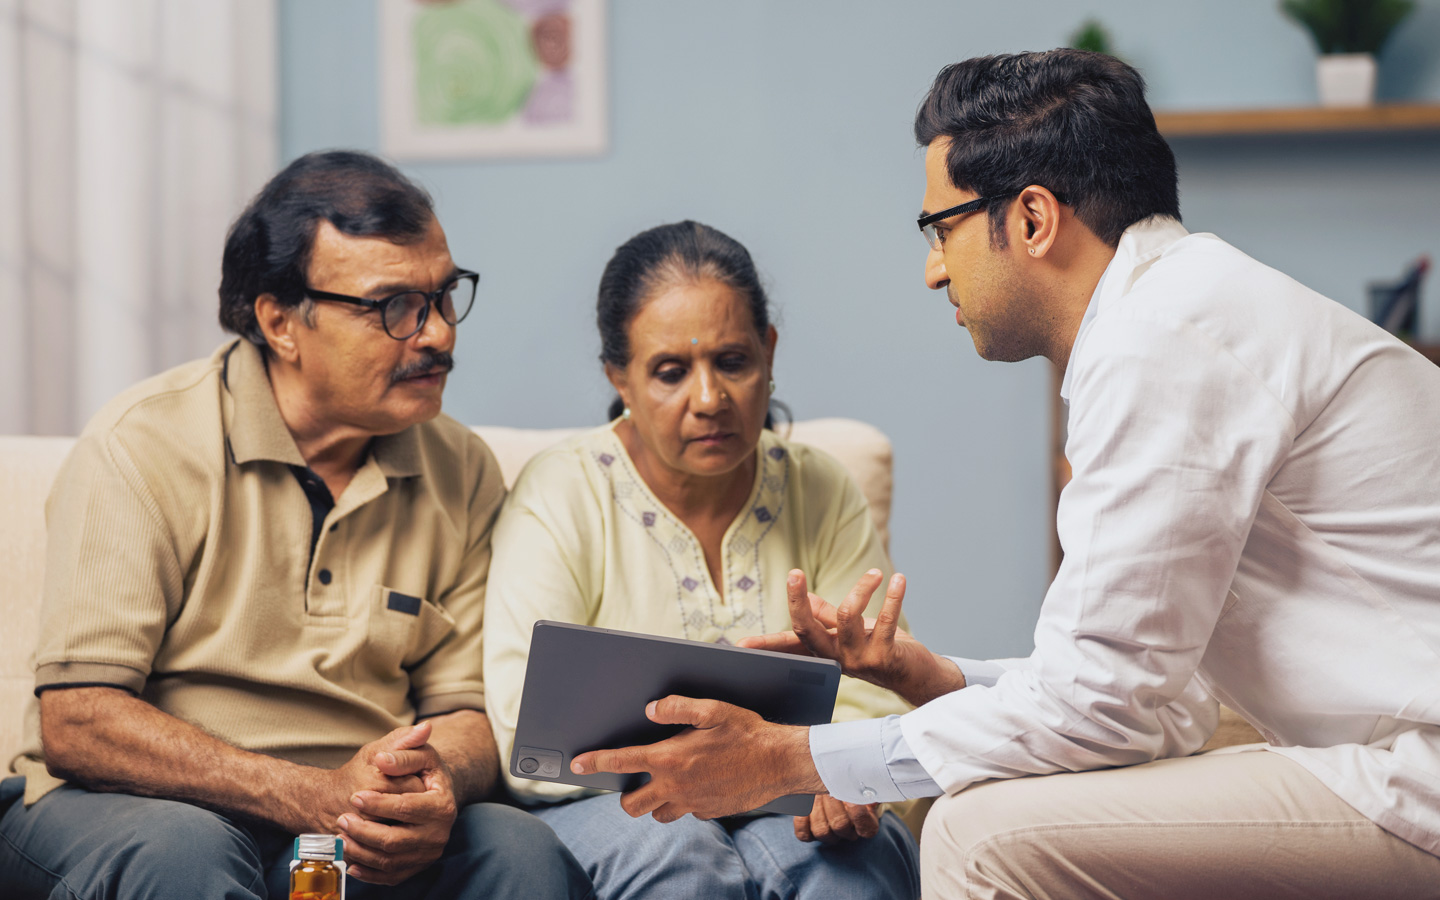 Eine Arzt zeigt einer Frau und einem Mann auf einem Tablet medizinische Angaben.